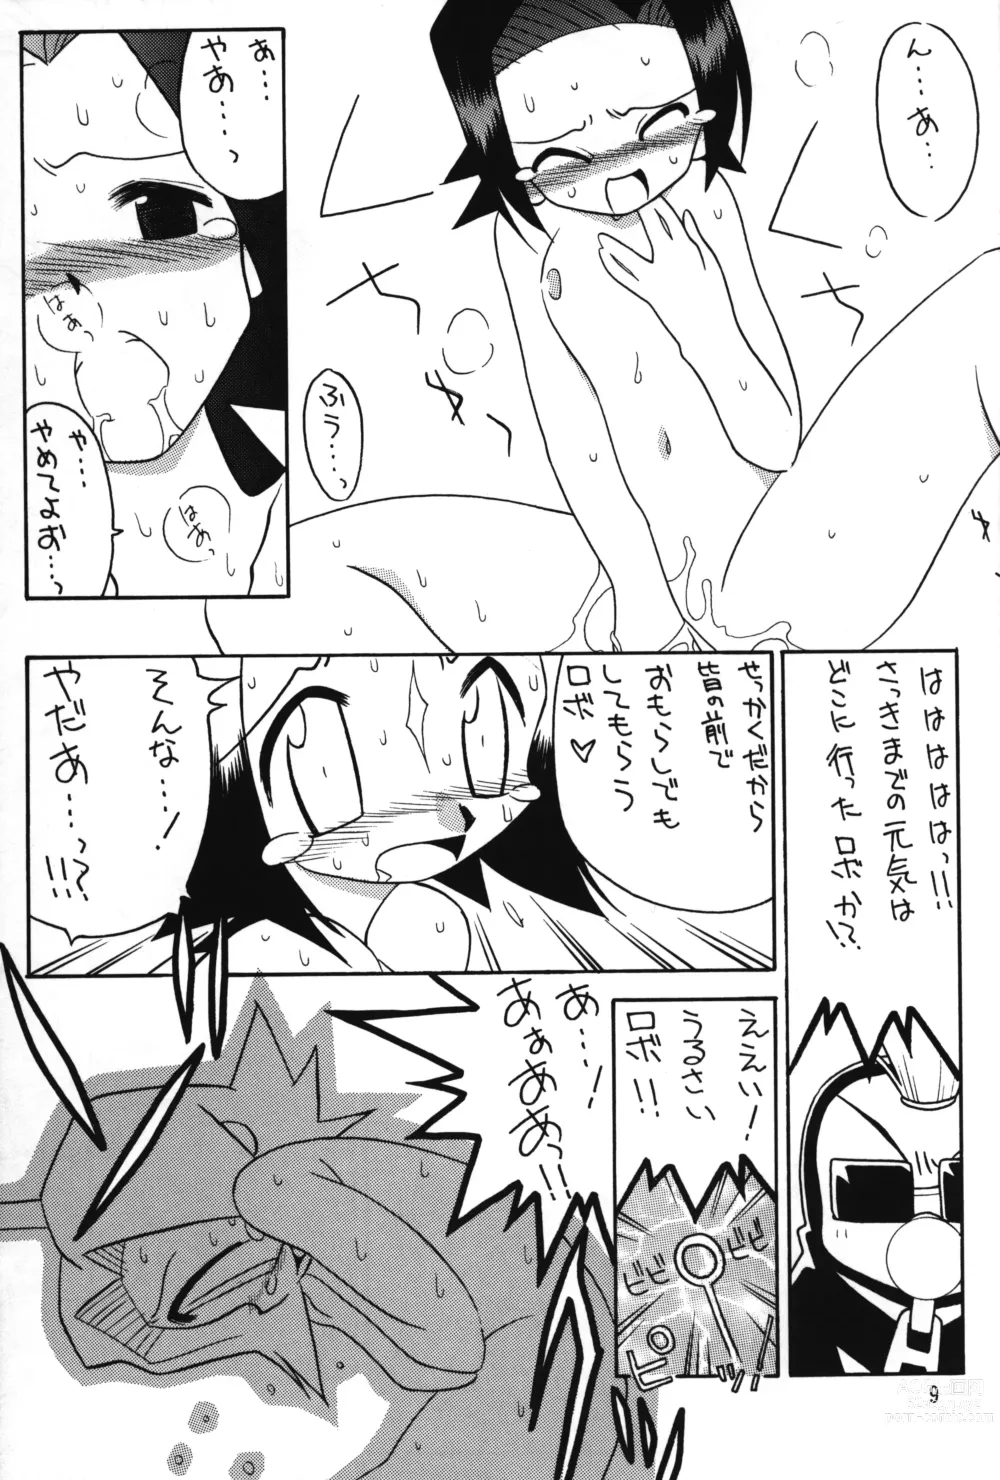 Page 8 of doujinshi Medabot to Tatami Furui Hou ga ii!